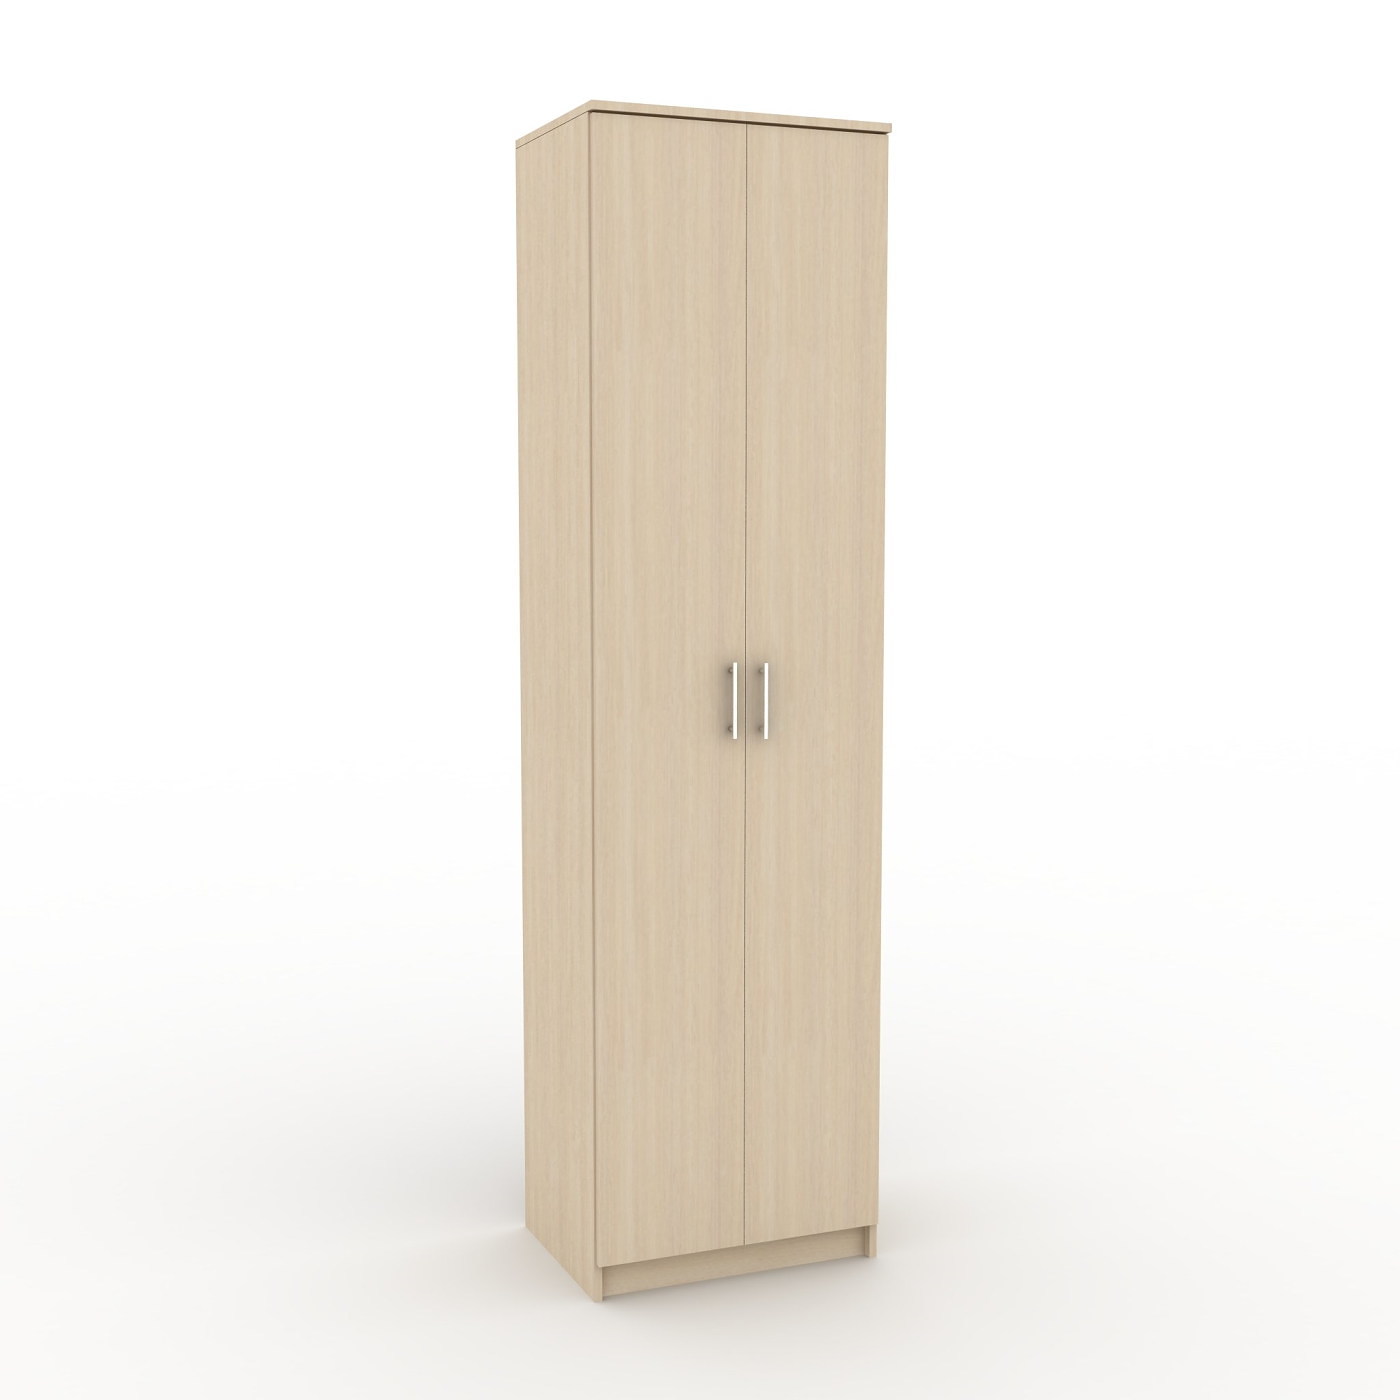 Шкаф Эконом-204b классический для прихожей и спальни - фото 1 large